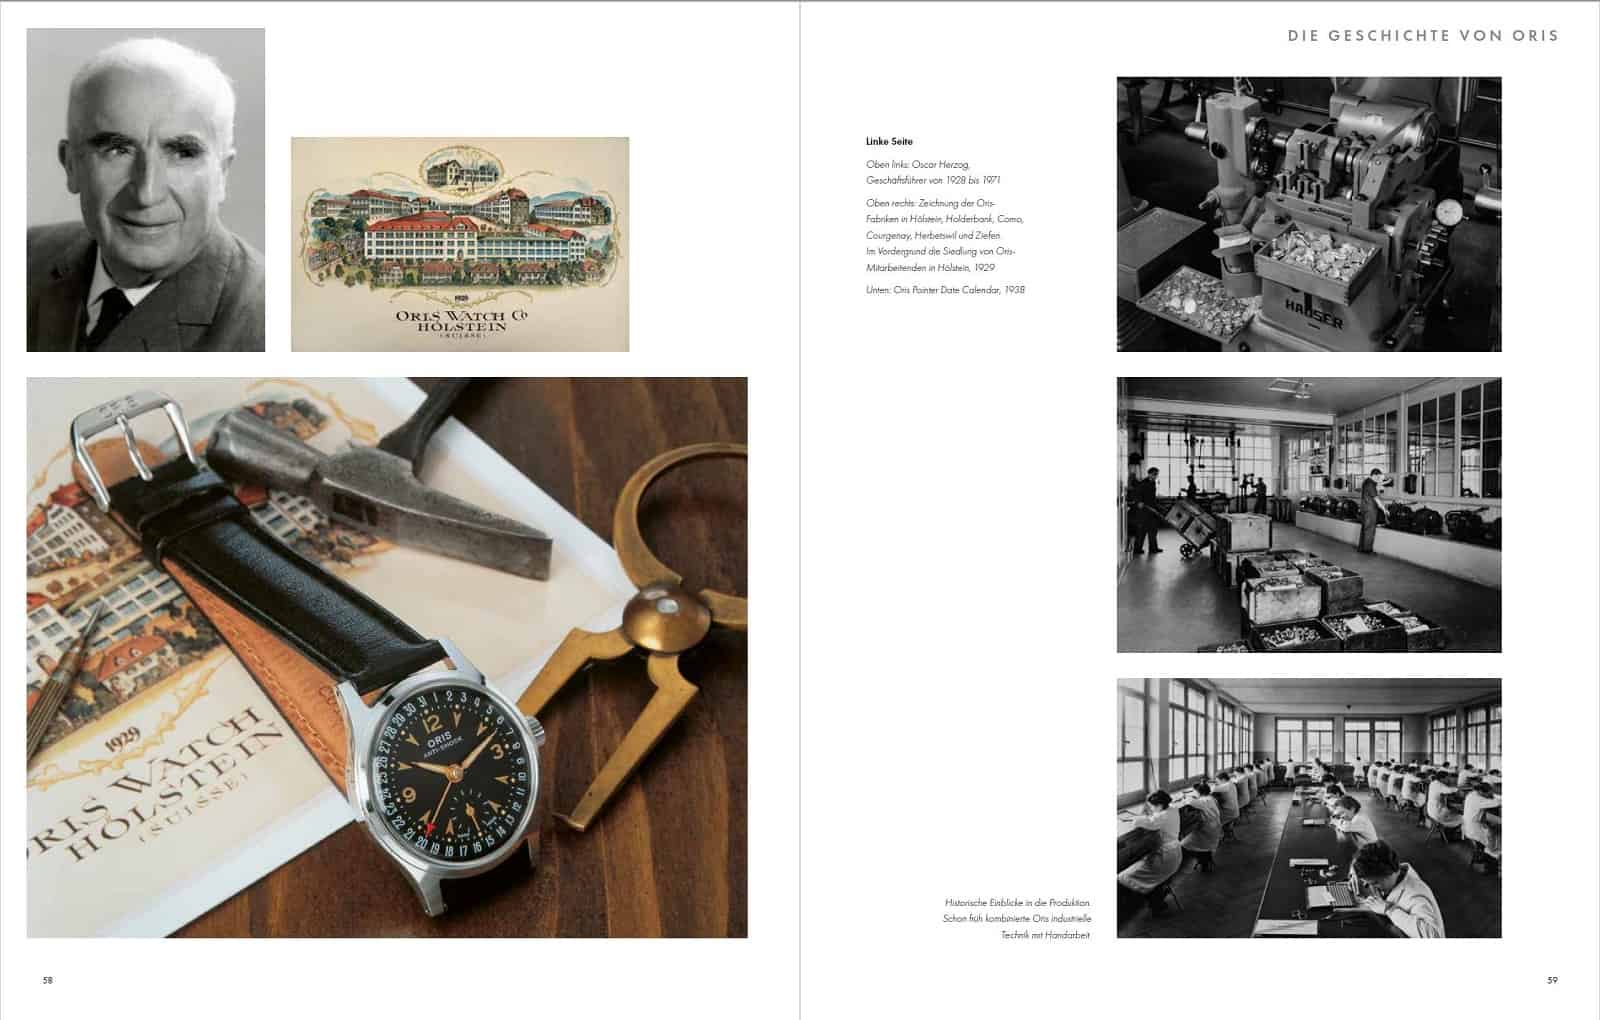 Historisch bedeutende Oris Uhren und Fotographie von Oscar Herzog Geschäftsführer von 1928 bis 1971